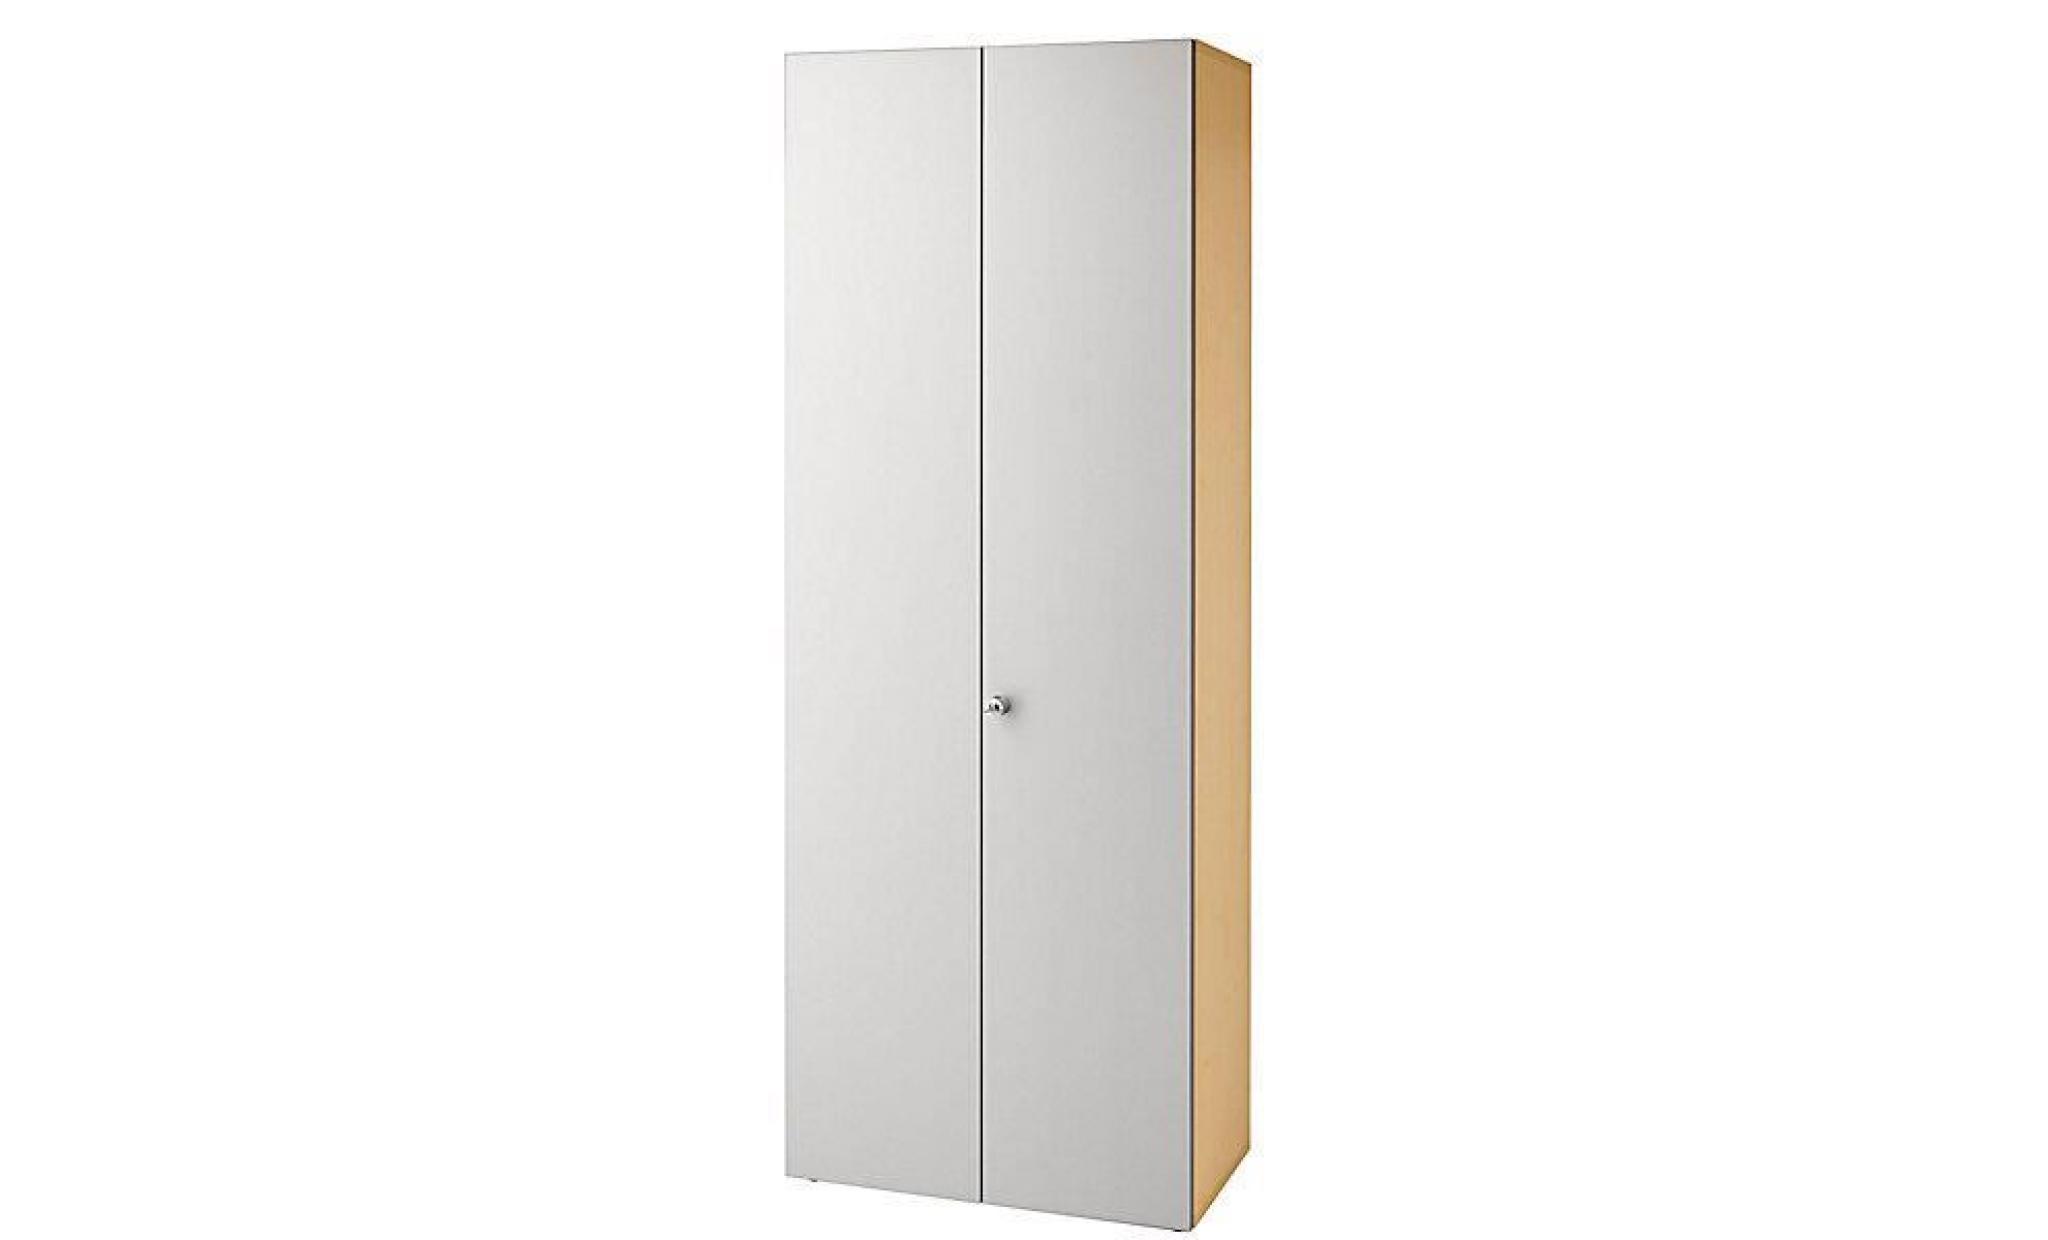 office akktiv armoire de bureau   portes battantes, 2 tablettes   façon noyer / aluminium   armoire armoire de bureau armoire en